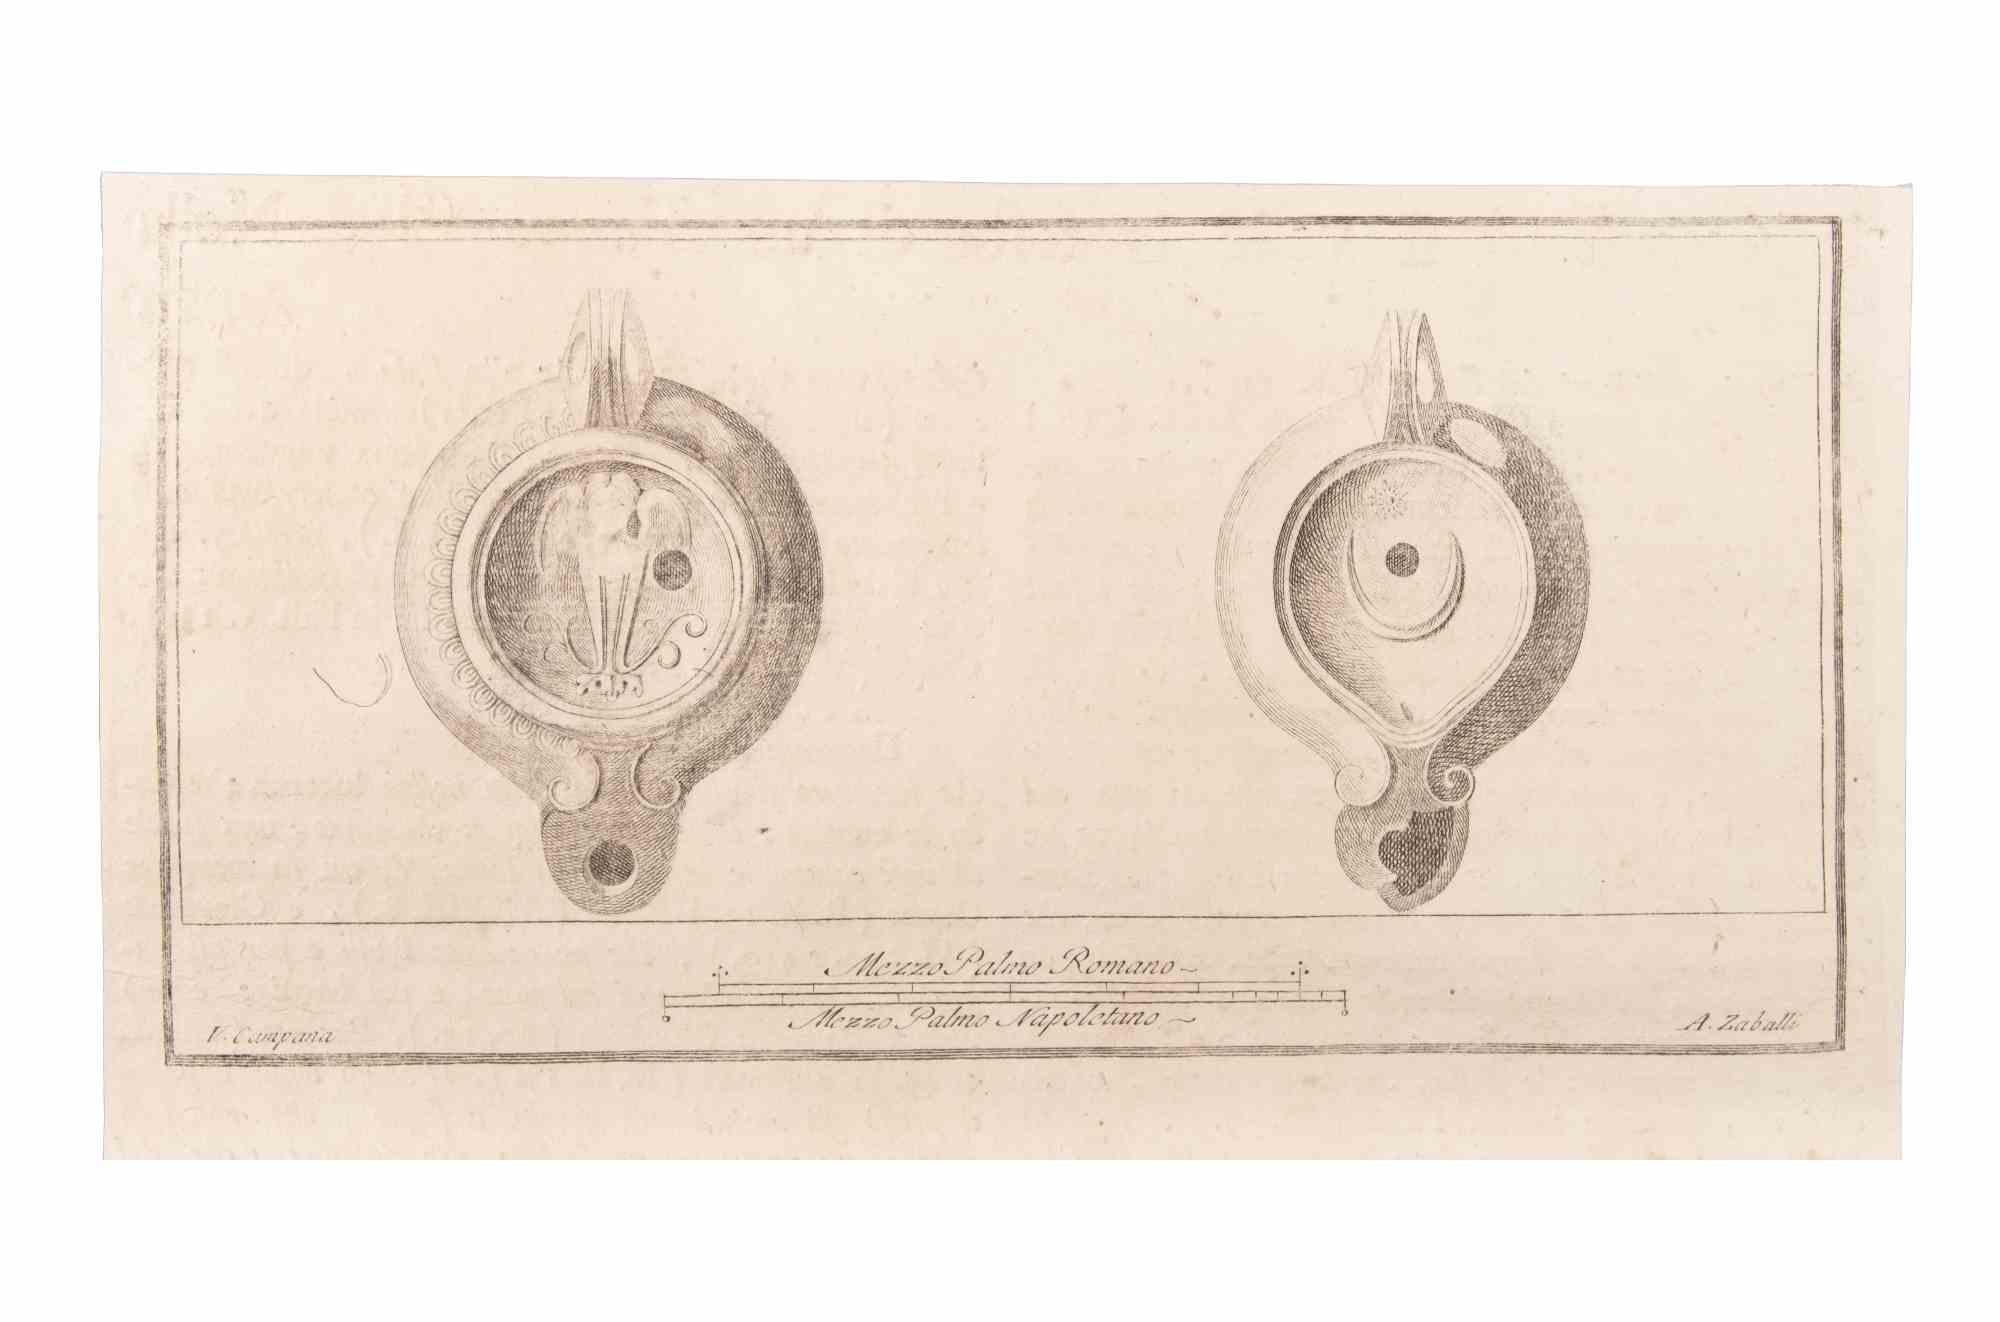 Oil Light est une gravure réalisée par Vincenzo Campana (1730-1806).

La gravure appartient à la suite d'estampes "Antiquités d'Herculanum exposées" (titre original : "Le Antichità di Ercolano Esposte"), un volume de huit gravures des découvertes